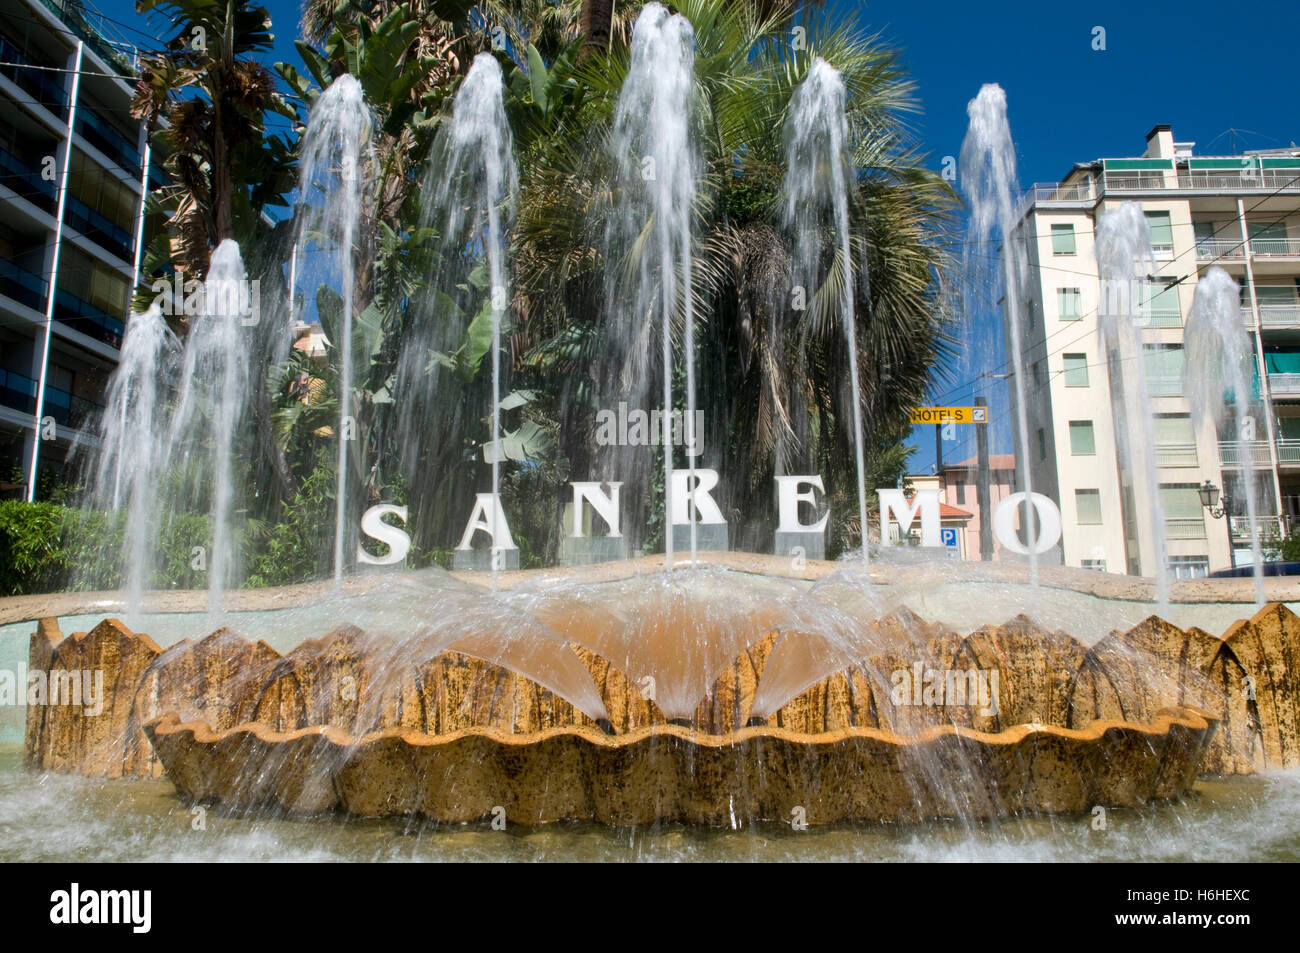 Fontaine, San Remo en lettrage, d'Azur, Ligurie, Italie, Europe Banque D'Images